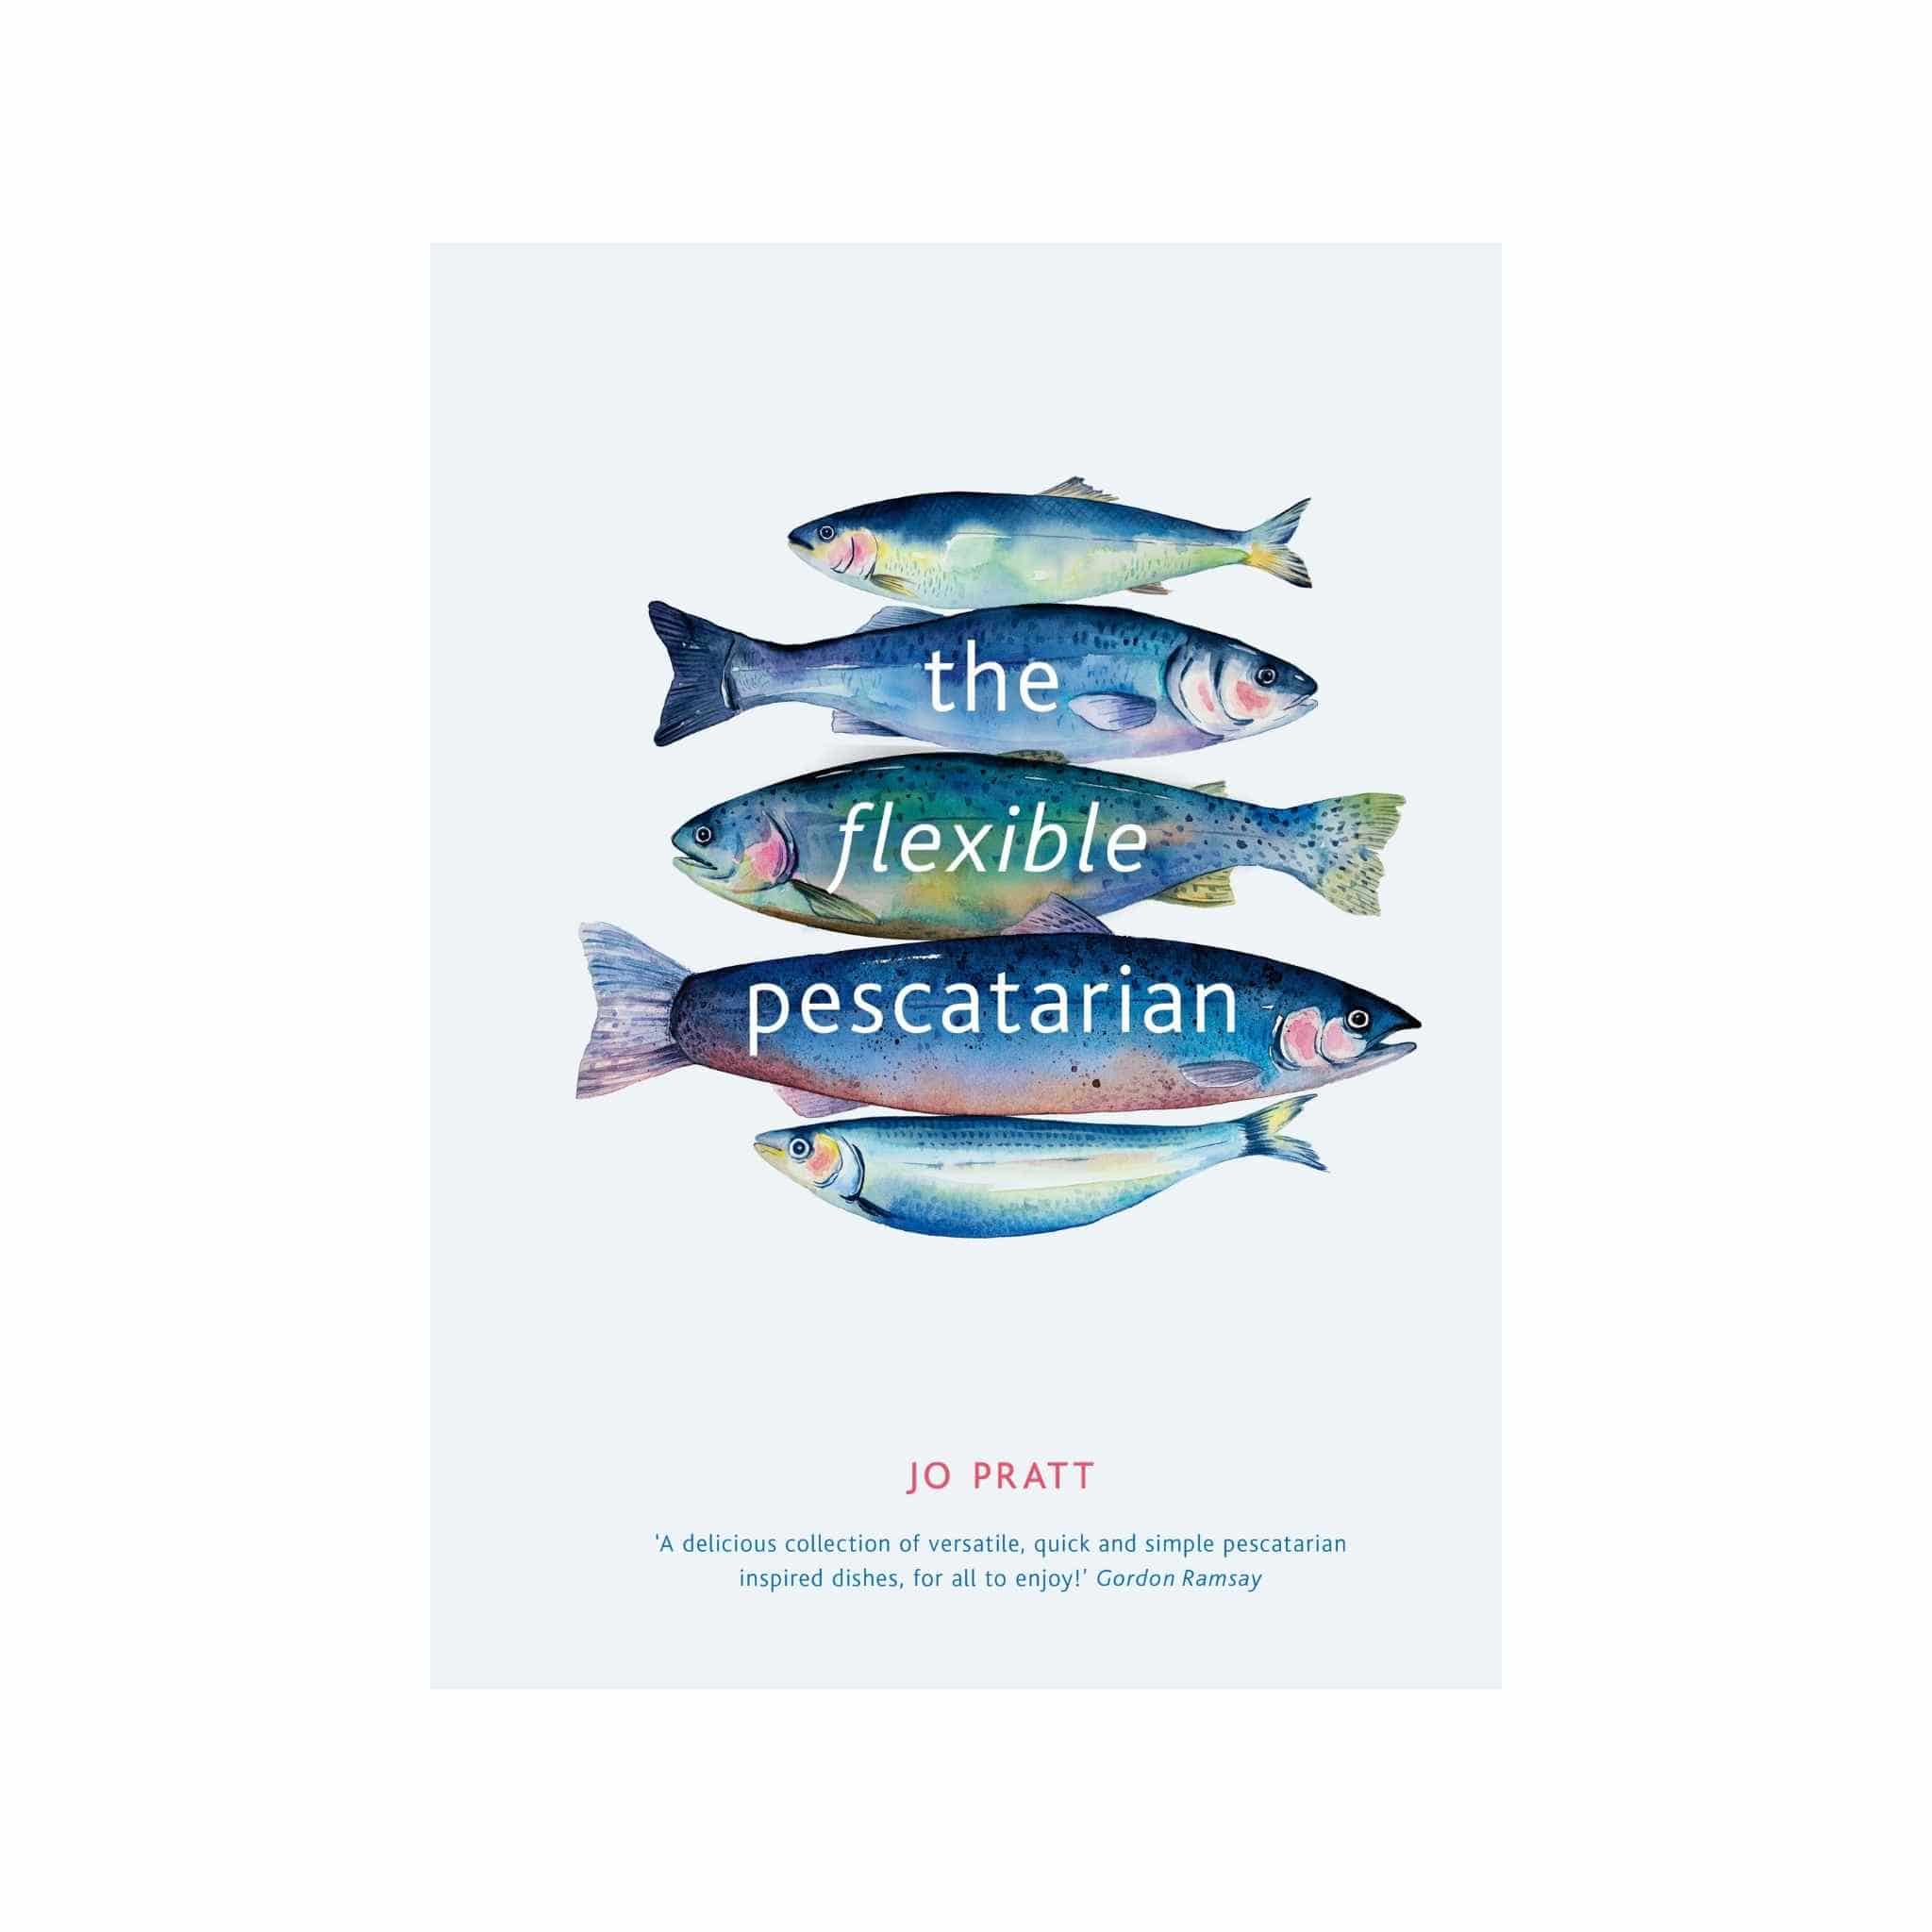 The Flexible Pescatarian cookbook